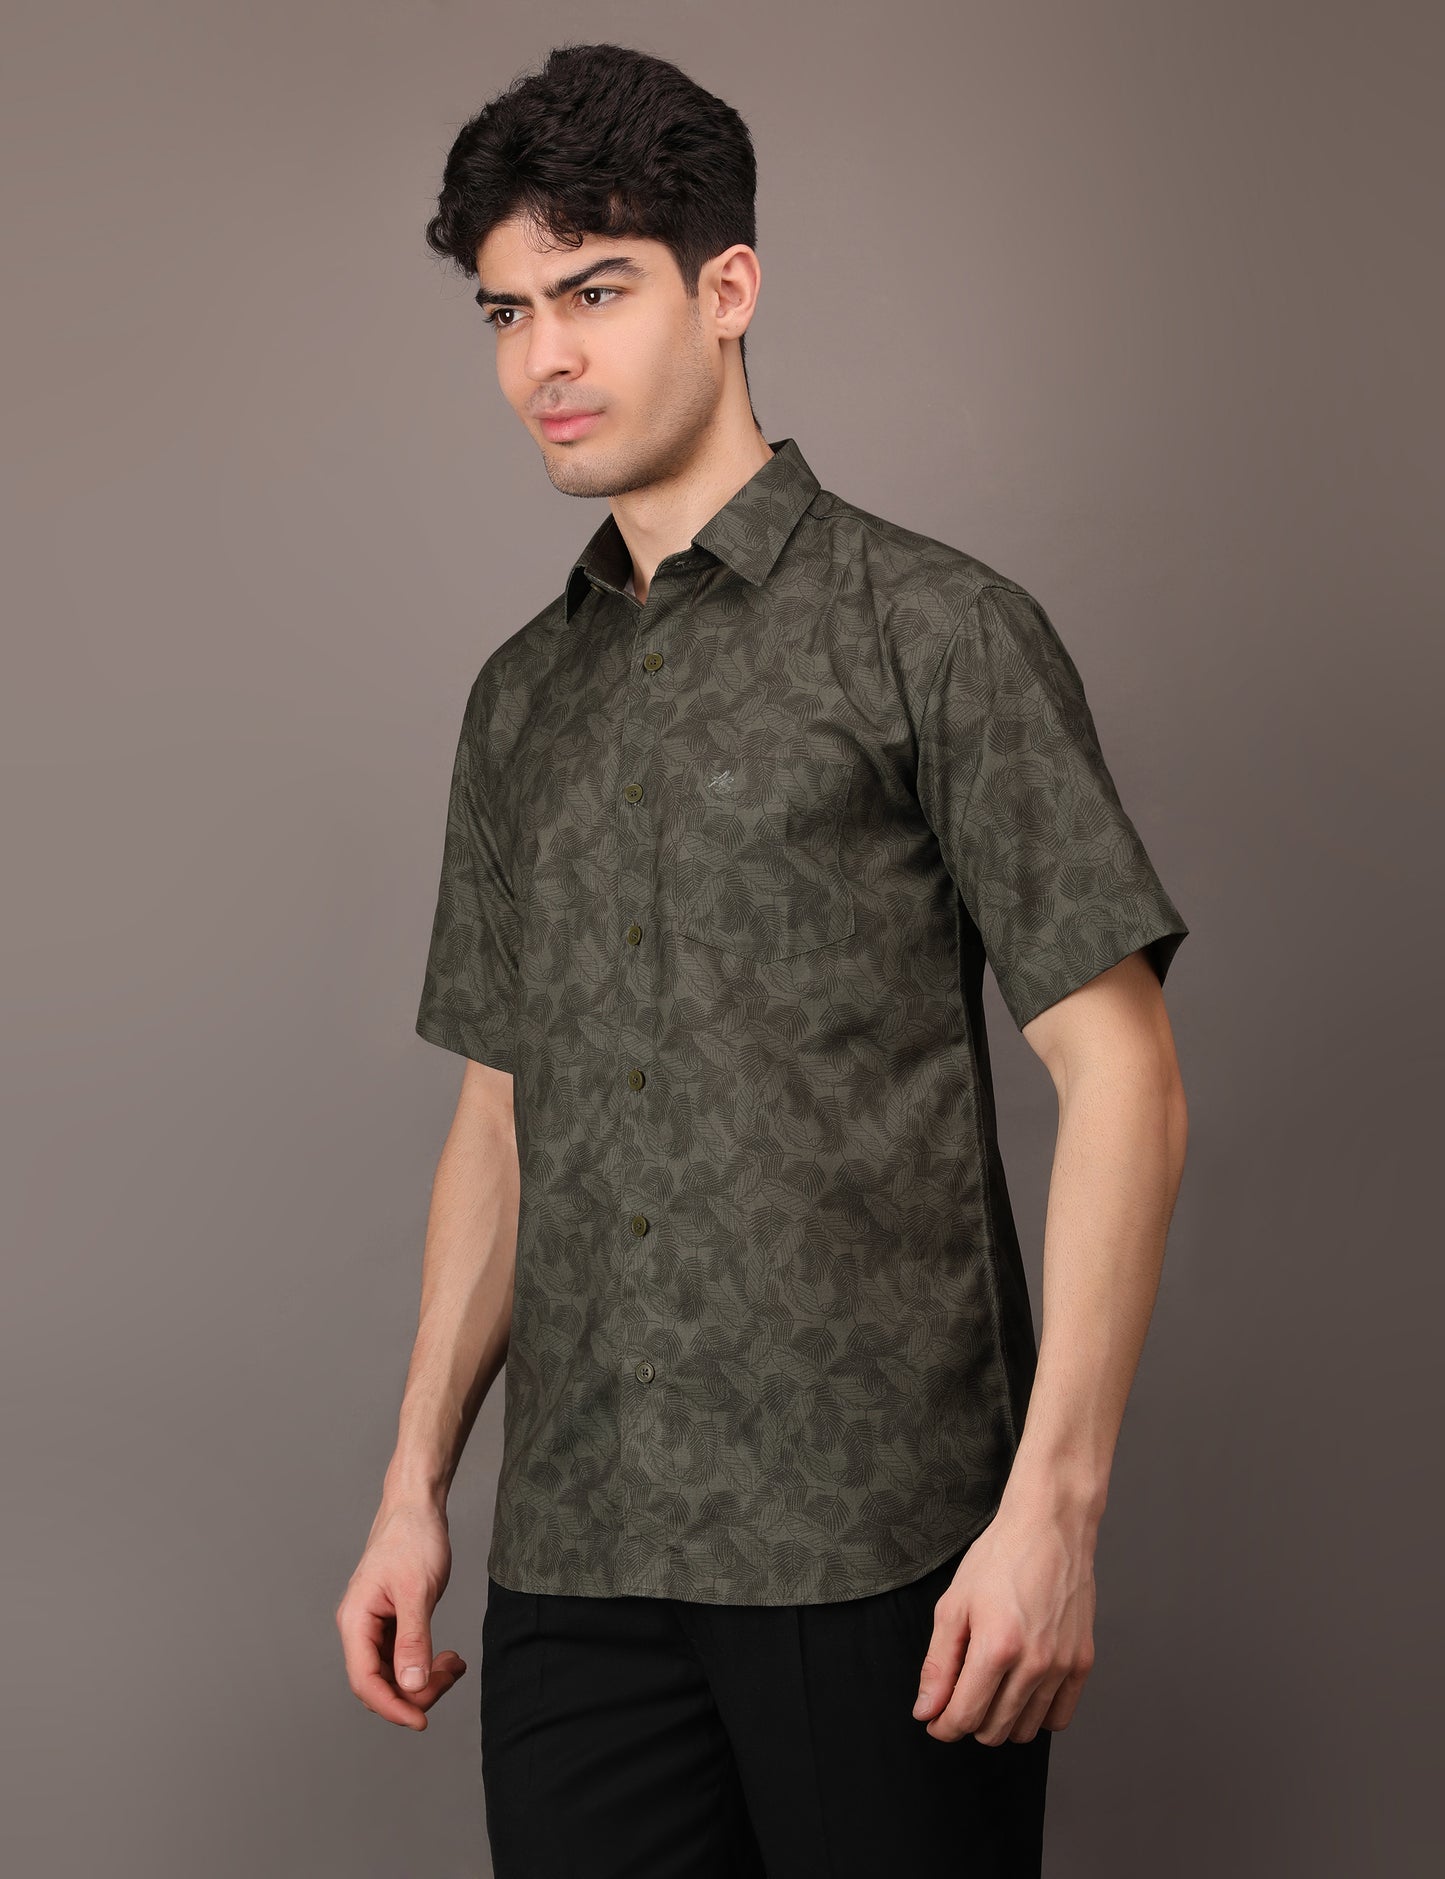 Olive Green Leaf pattern shirt